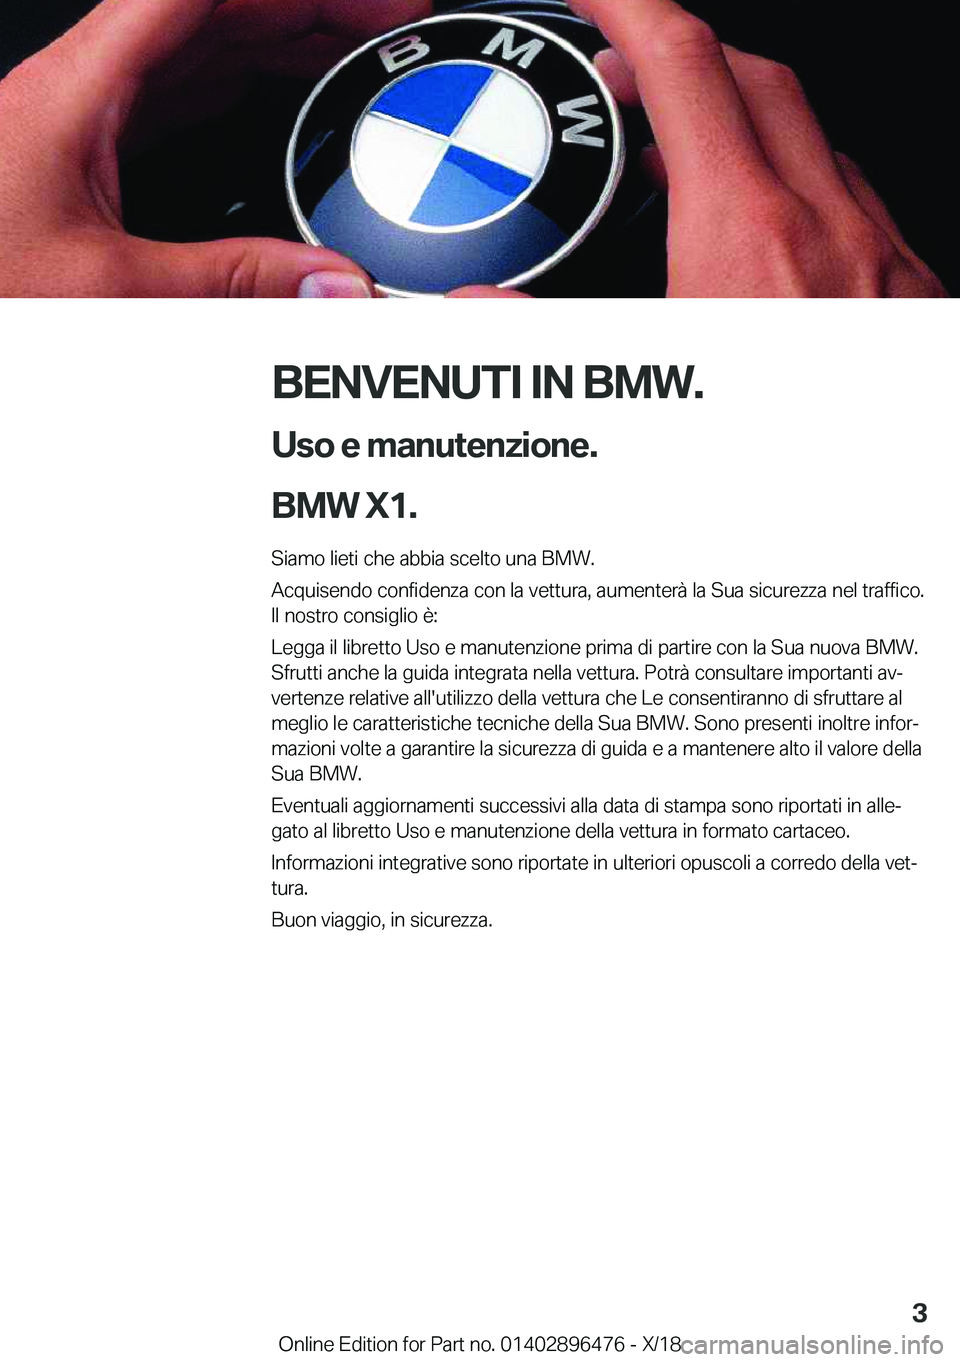 BMW X1 2019  Libretti Di Uso E manutenzione (in Italian) �B�E�N�V�E�N�U�T�I��I�N��B�M�W�.�U�s�o��e��m�a�n�u�t�e�n�z�i�o�n�e�.
�B�M�W��X�1�.
�S�i�a�m�o��l�i�e�t�i��c�h�e��a�b�b�i�a��s�c�e�l�t�o��u�n�a��B�M�W�.
�A�c�q�u�i�s�e�n�d�o��c�o�n�f�i�d�e�